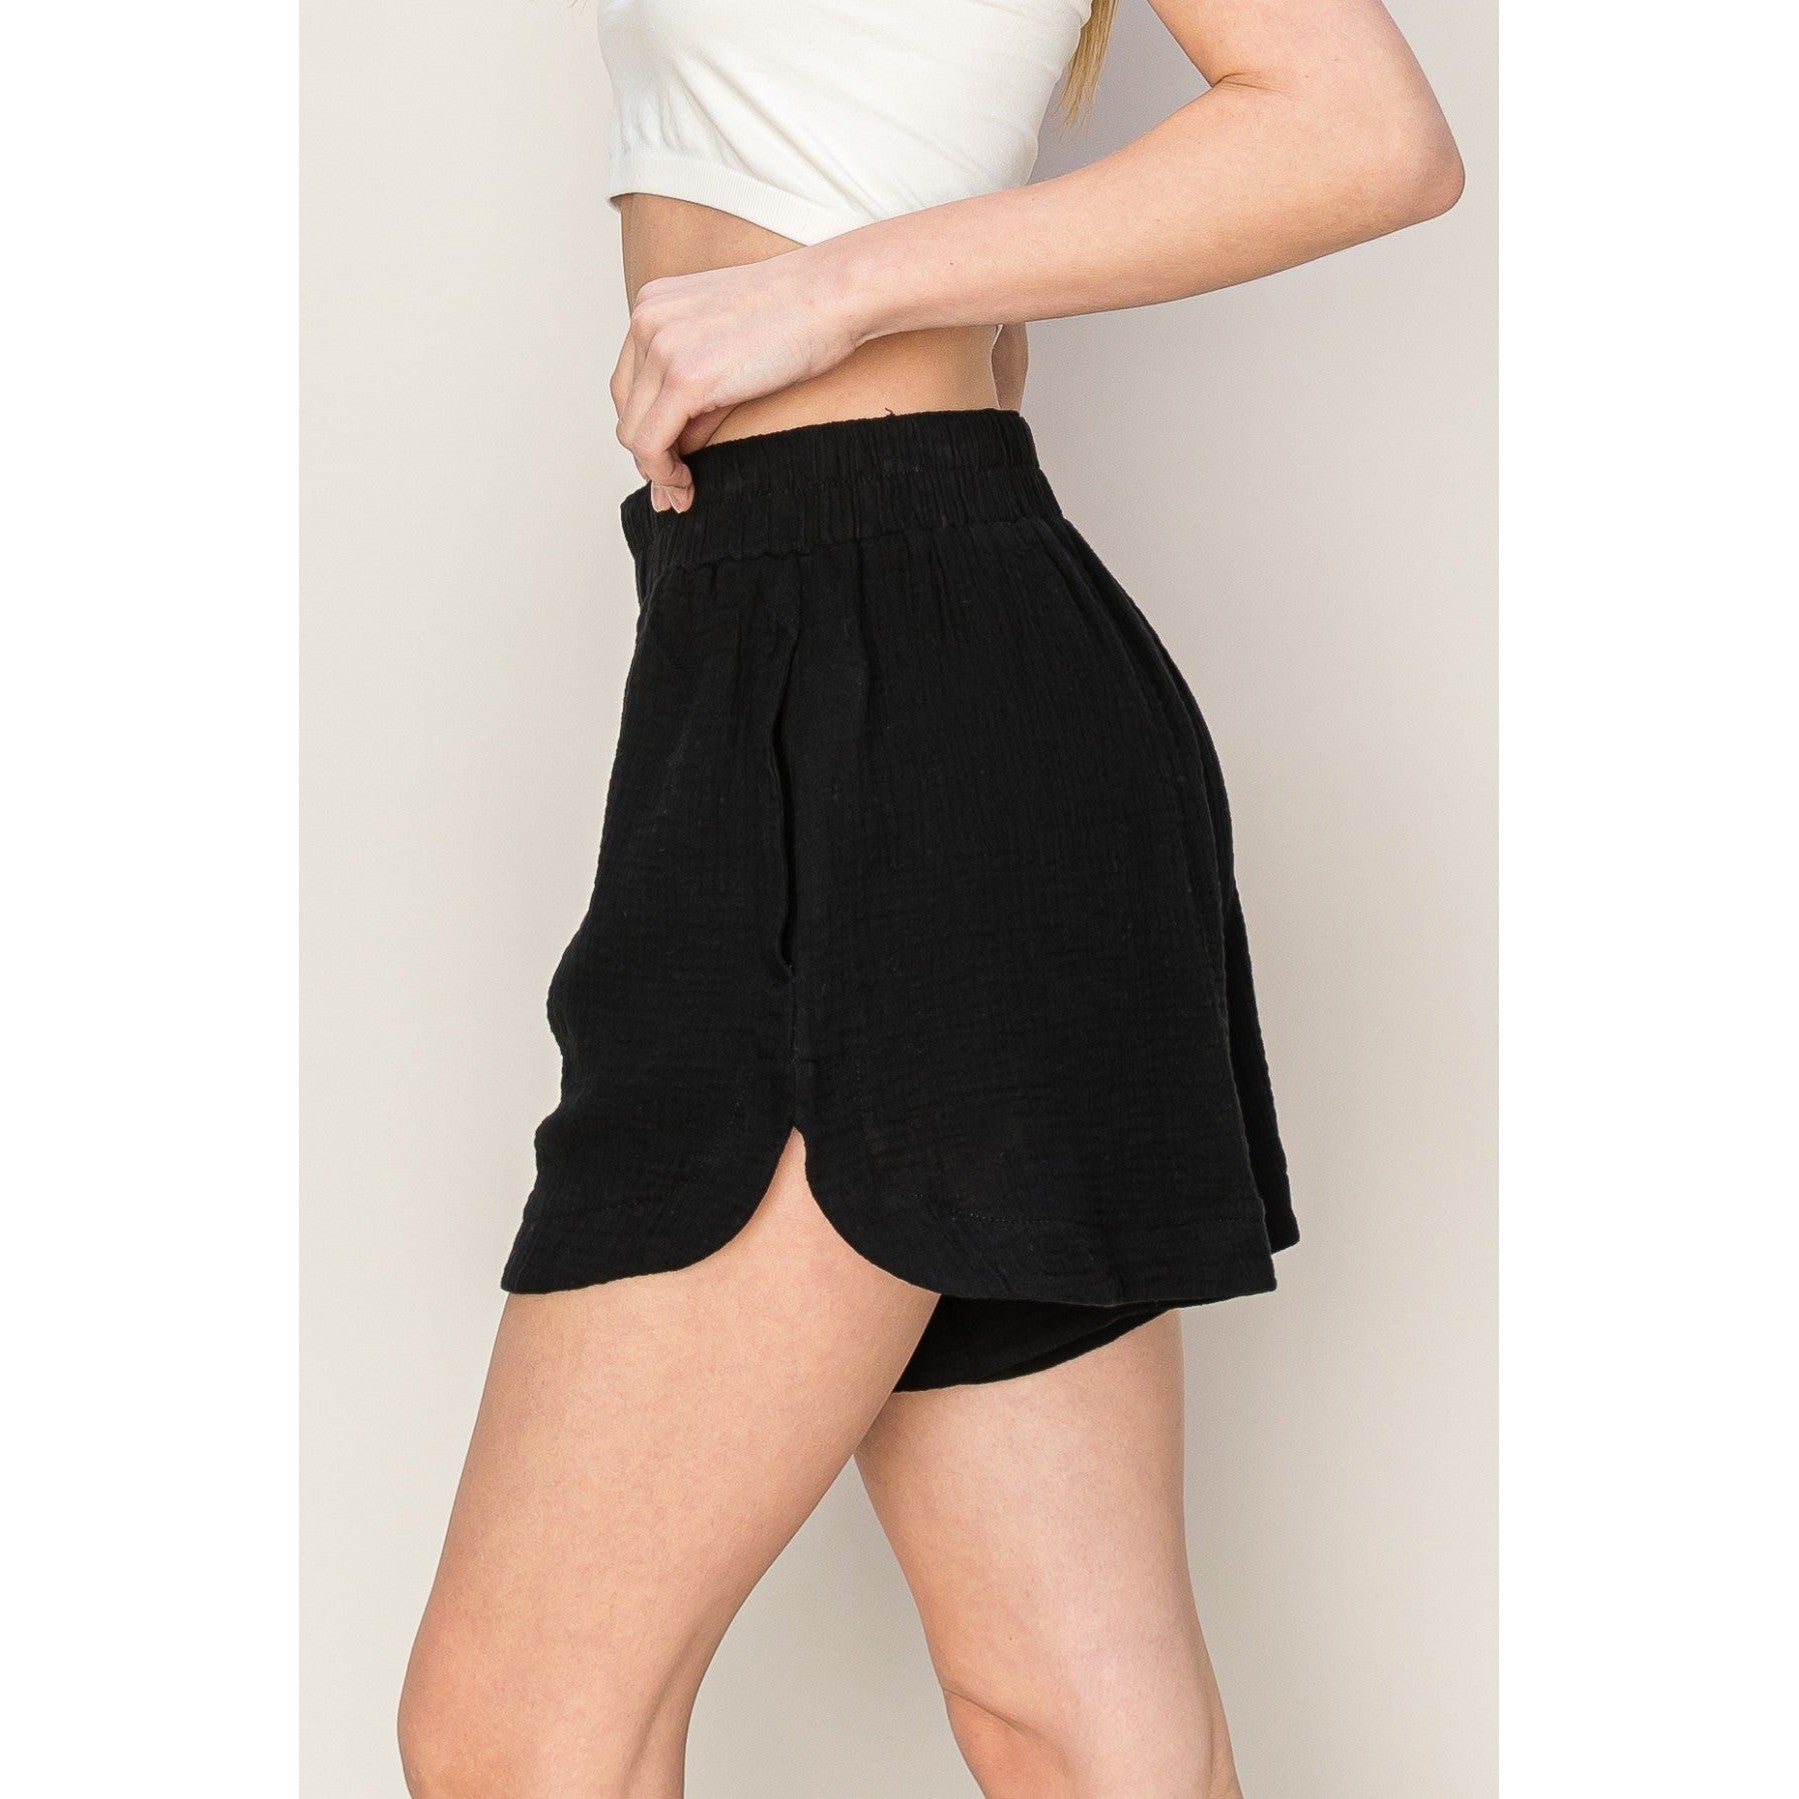 Cotton Guaze Shorts || Black